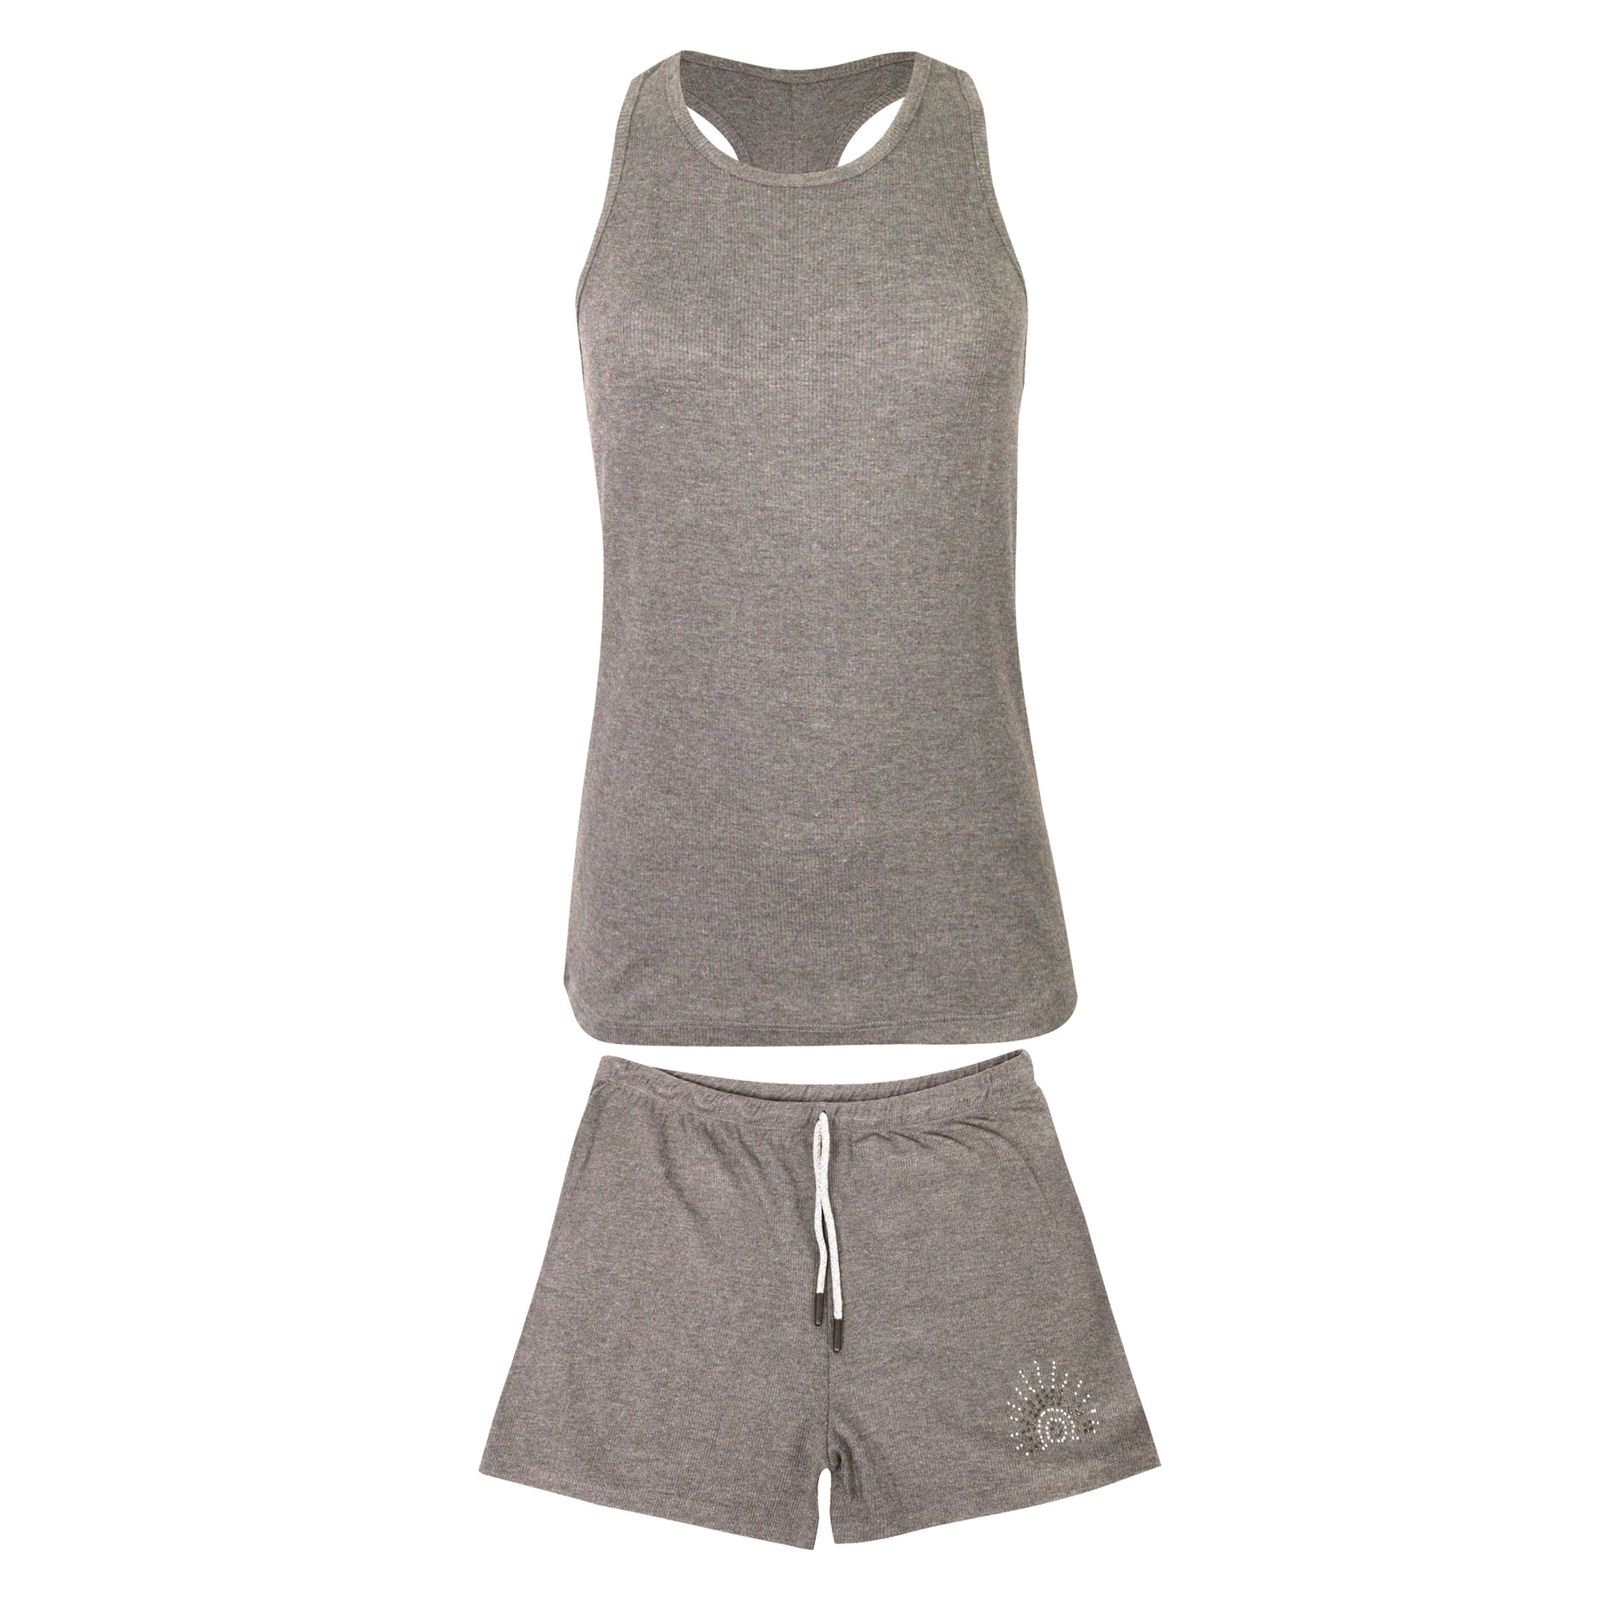 ست تاپ و شلوارک ورزشی زنانه کوزا مدل 3712my رنگ خاکستری روشن -  - 1